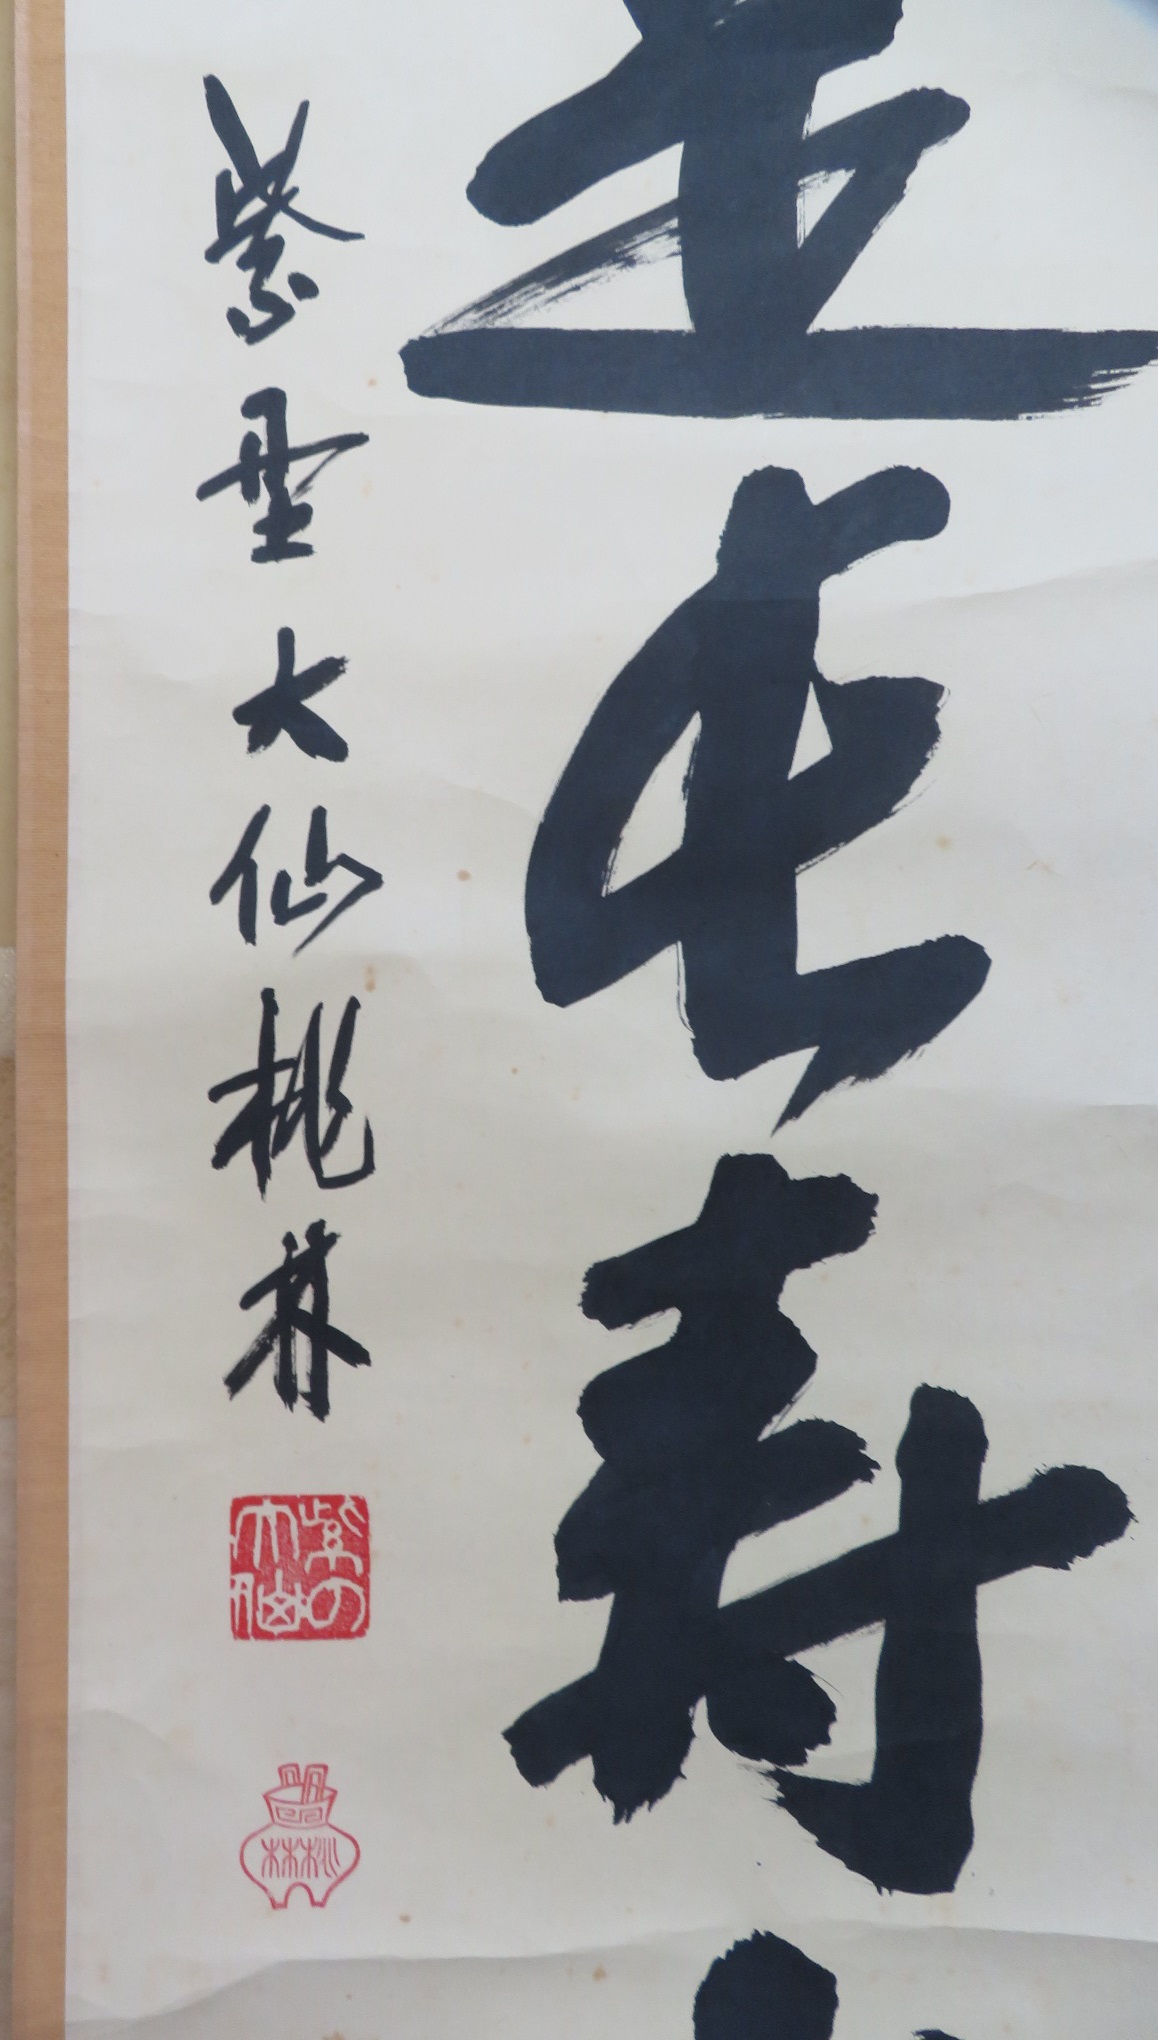 026 | 骨董品高価買取 ひるねこ堂 | 関西 尼崎での骨董品・美術品の高価買取はお任せください。